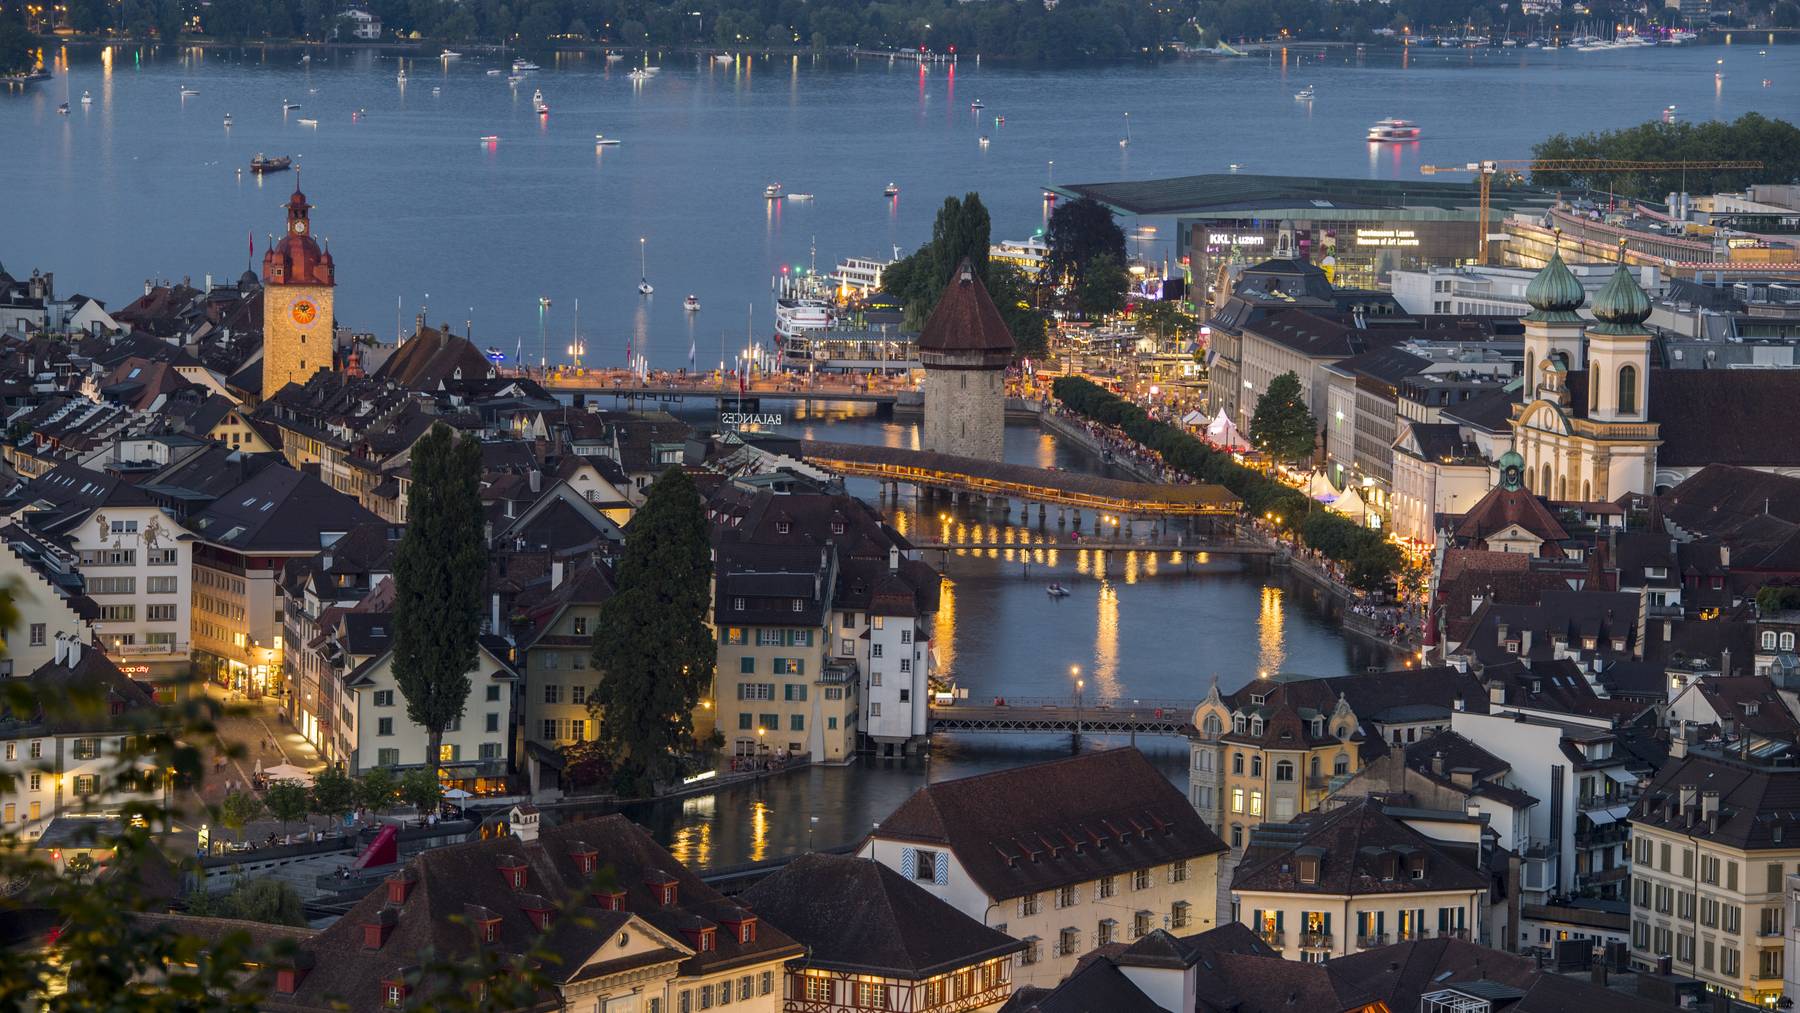 Die Altstadt von Luzern mit dem Luzerner Seebecken vom Samstag, 30. Juni 2018 anlaesslich des Luzerner Fest.